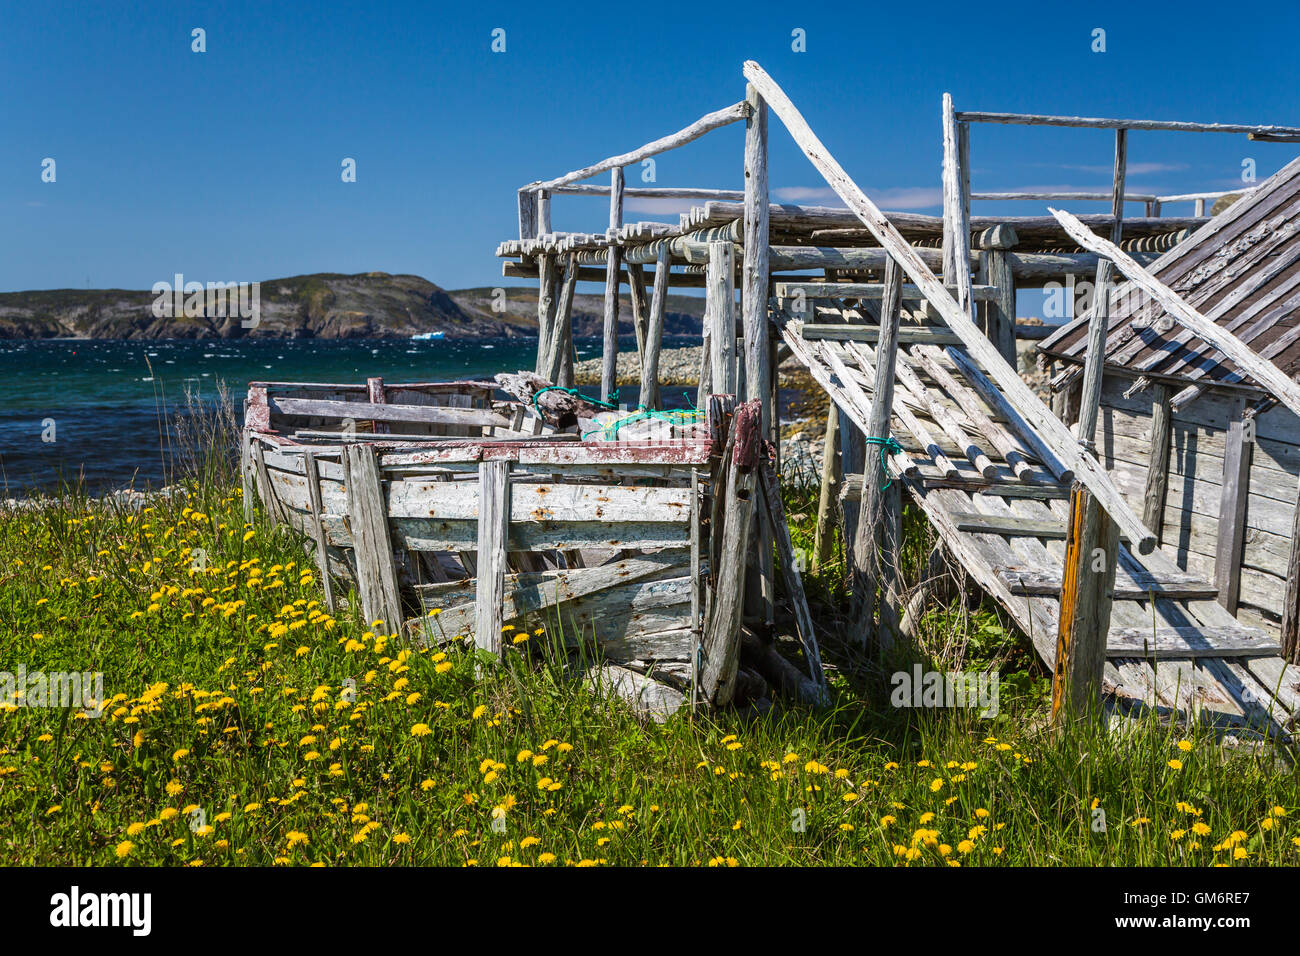 Un vieux bateau et shack, près de la baie Bonavista, Terre-Neuve et Labrador, Canada. Banque D'Images